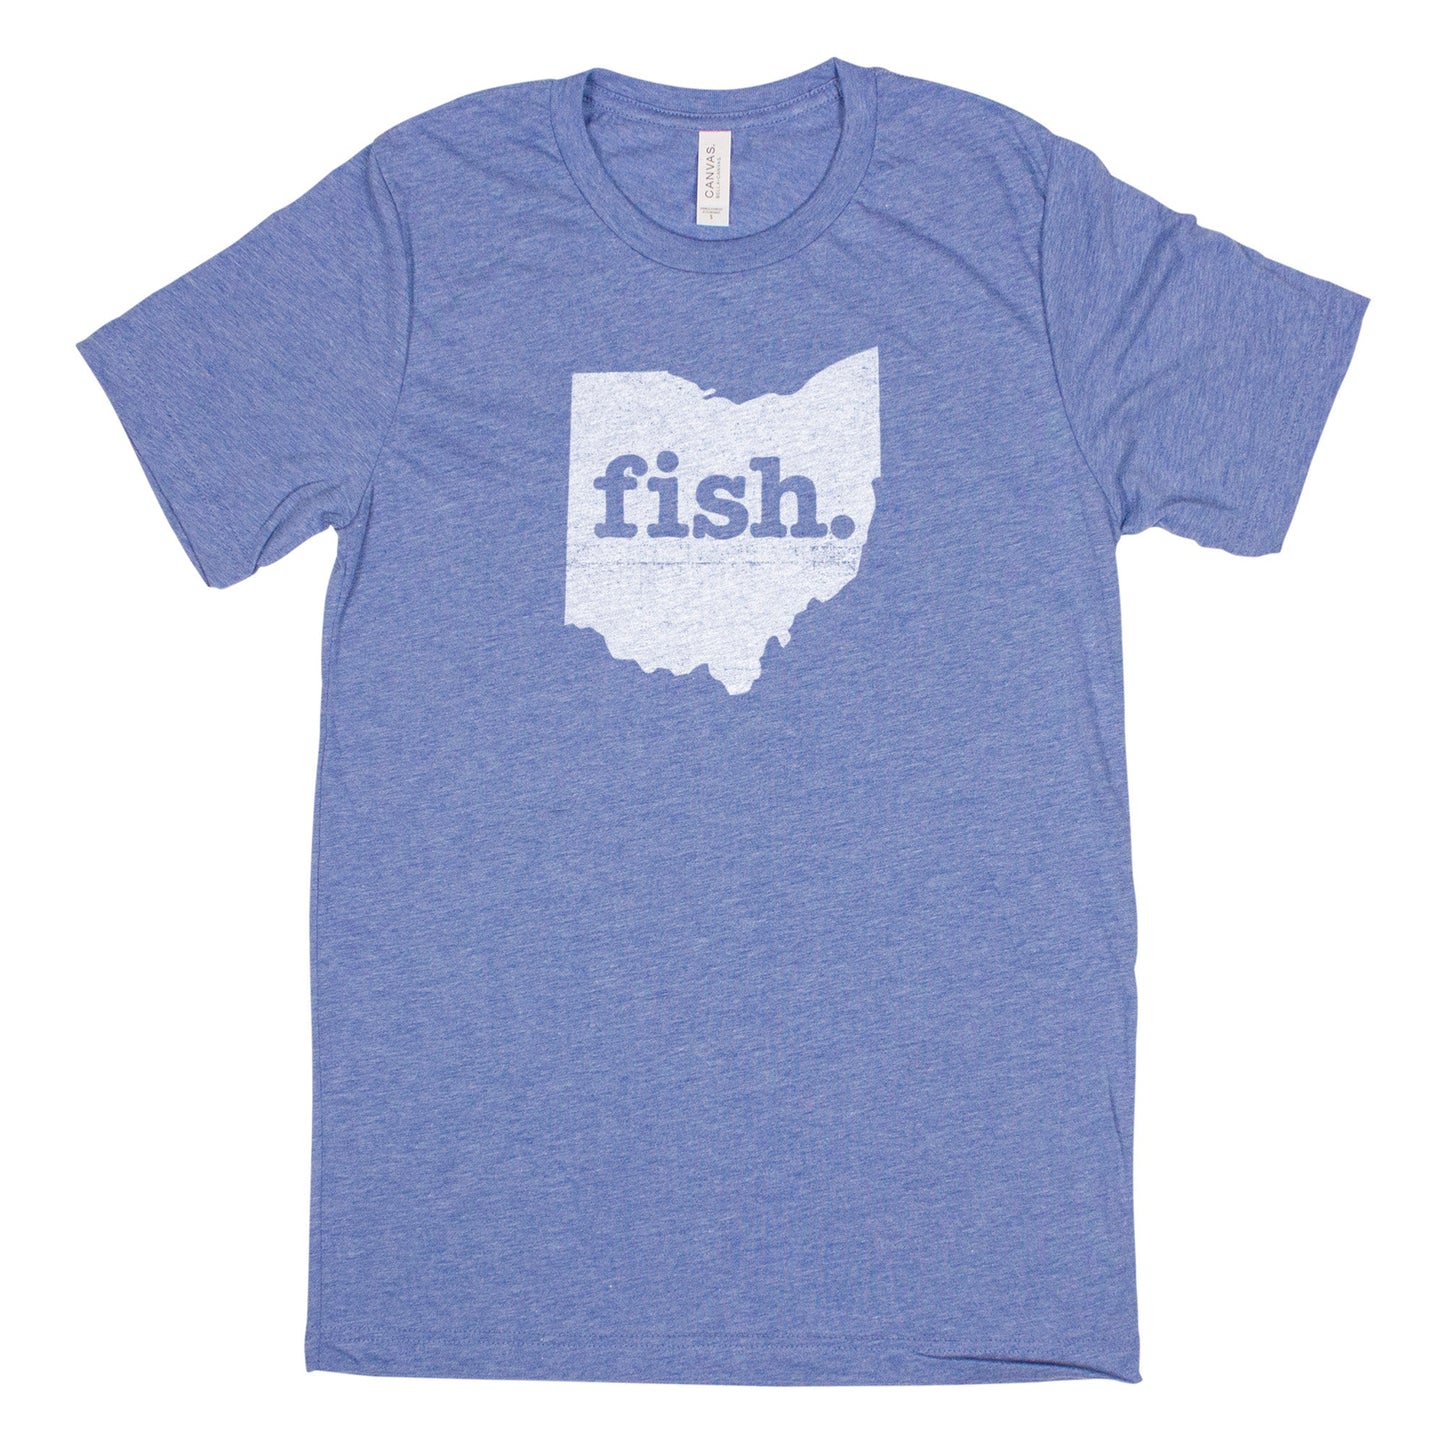 fish. Men's Unisex T-Shirt - Ohio